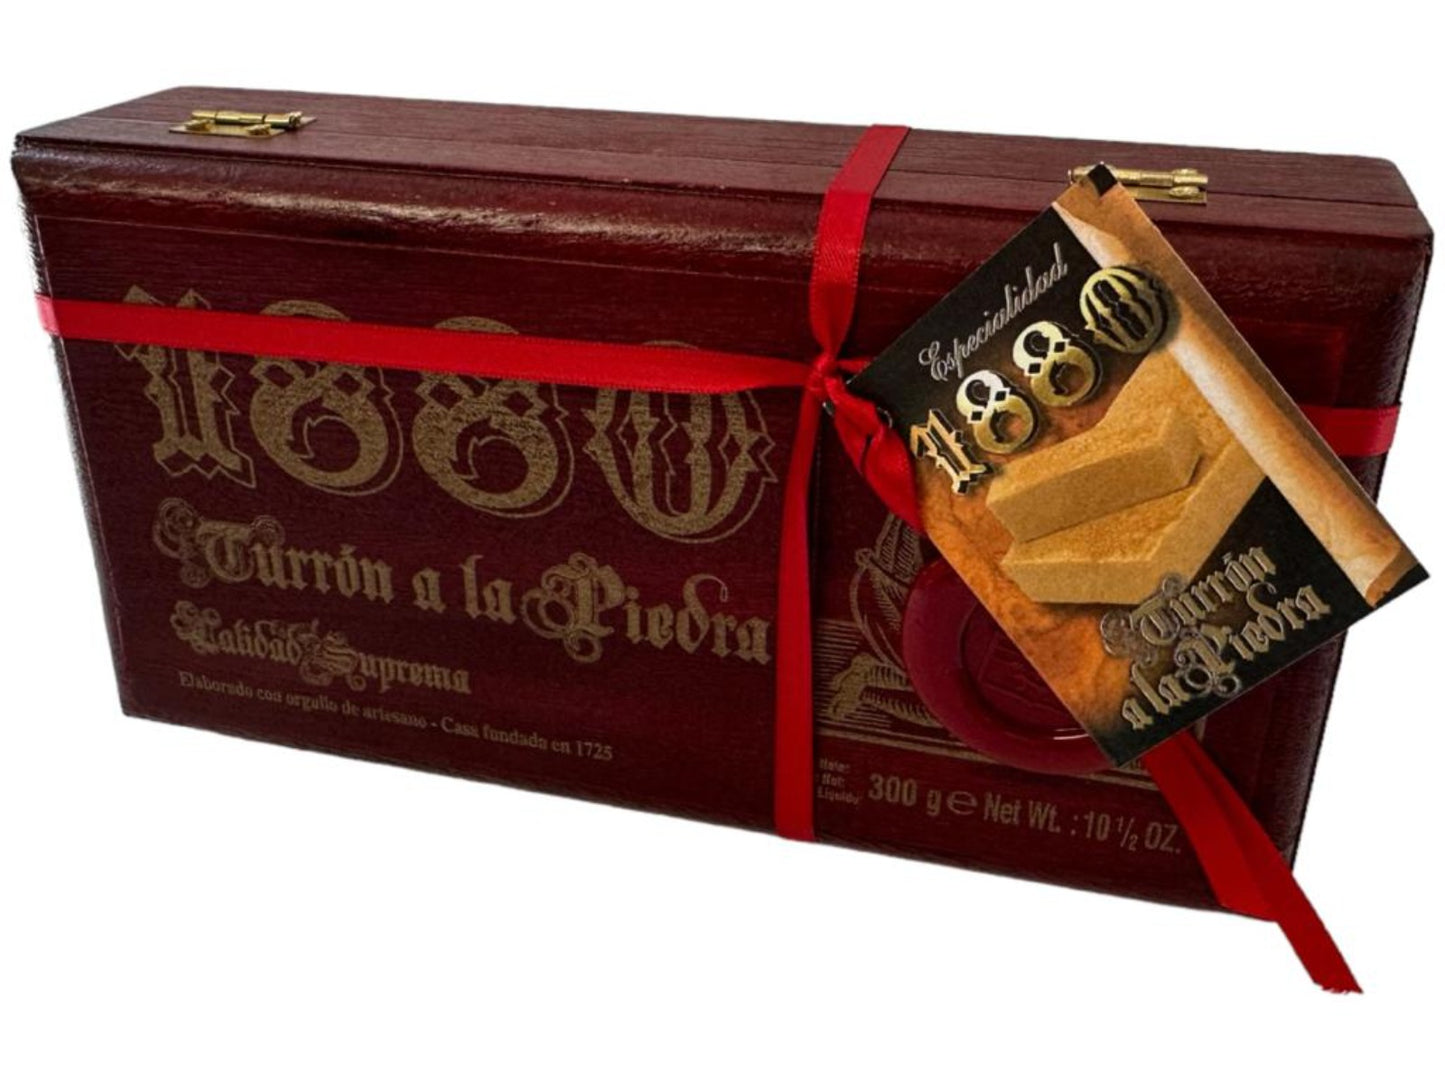 1880 Turron de Crema a la Piedra Spanish Soft Nougat Almond & Cinnamon 300g